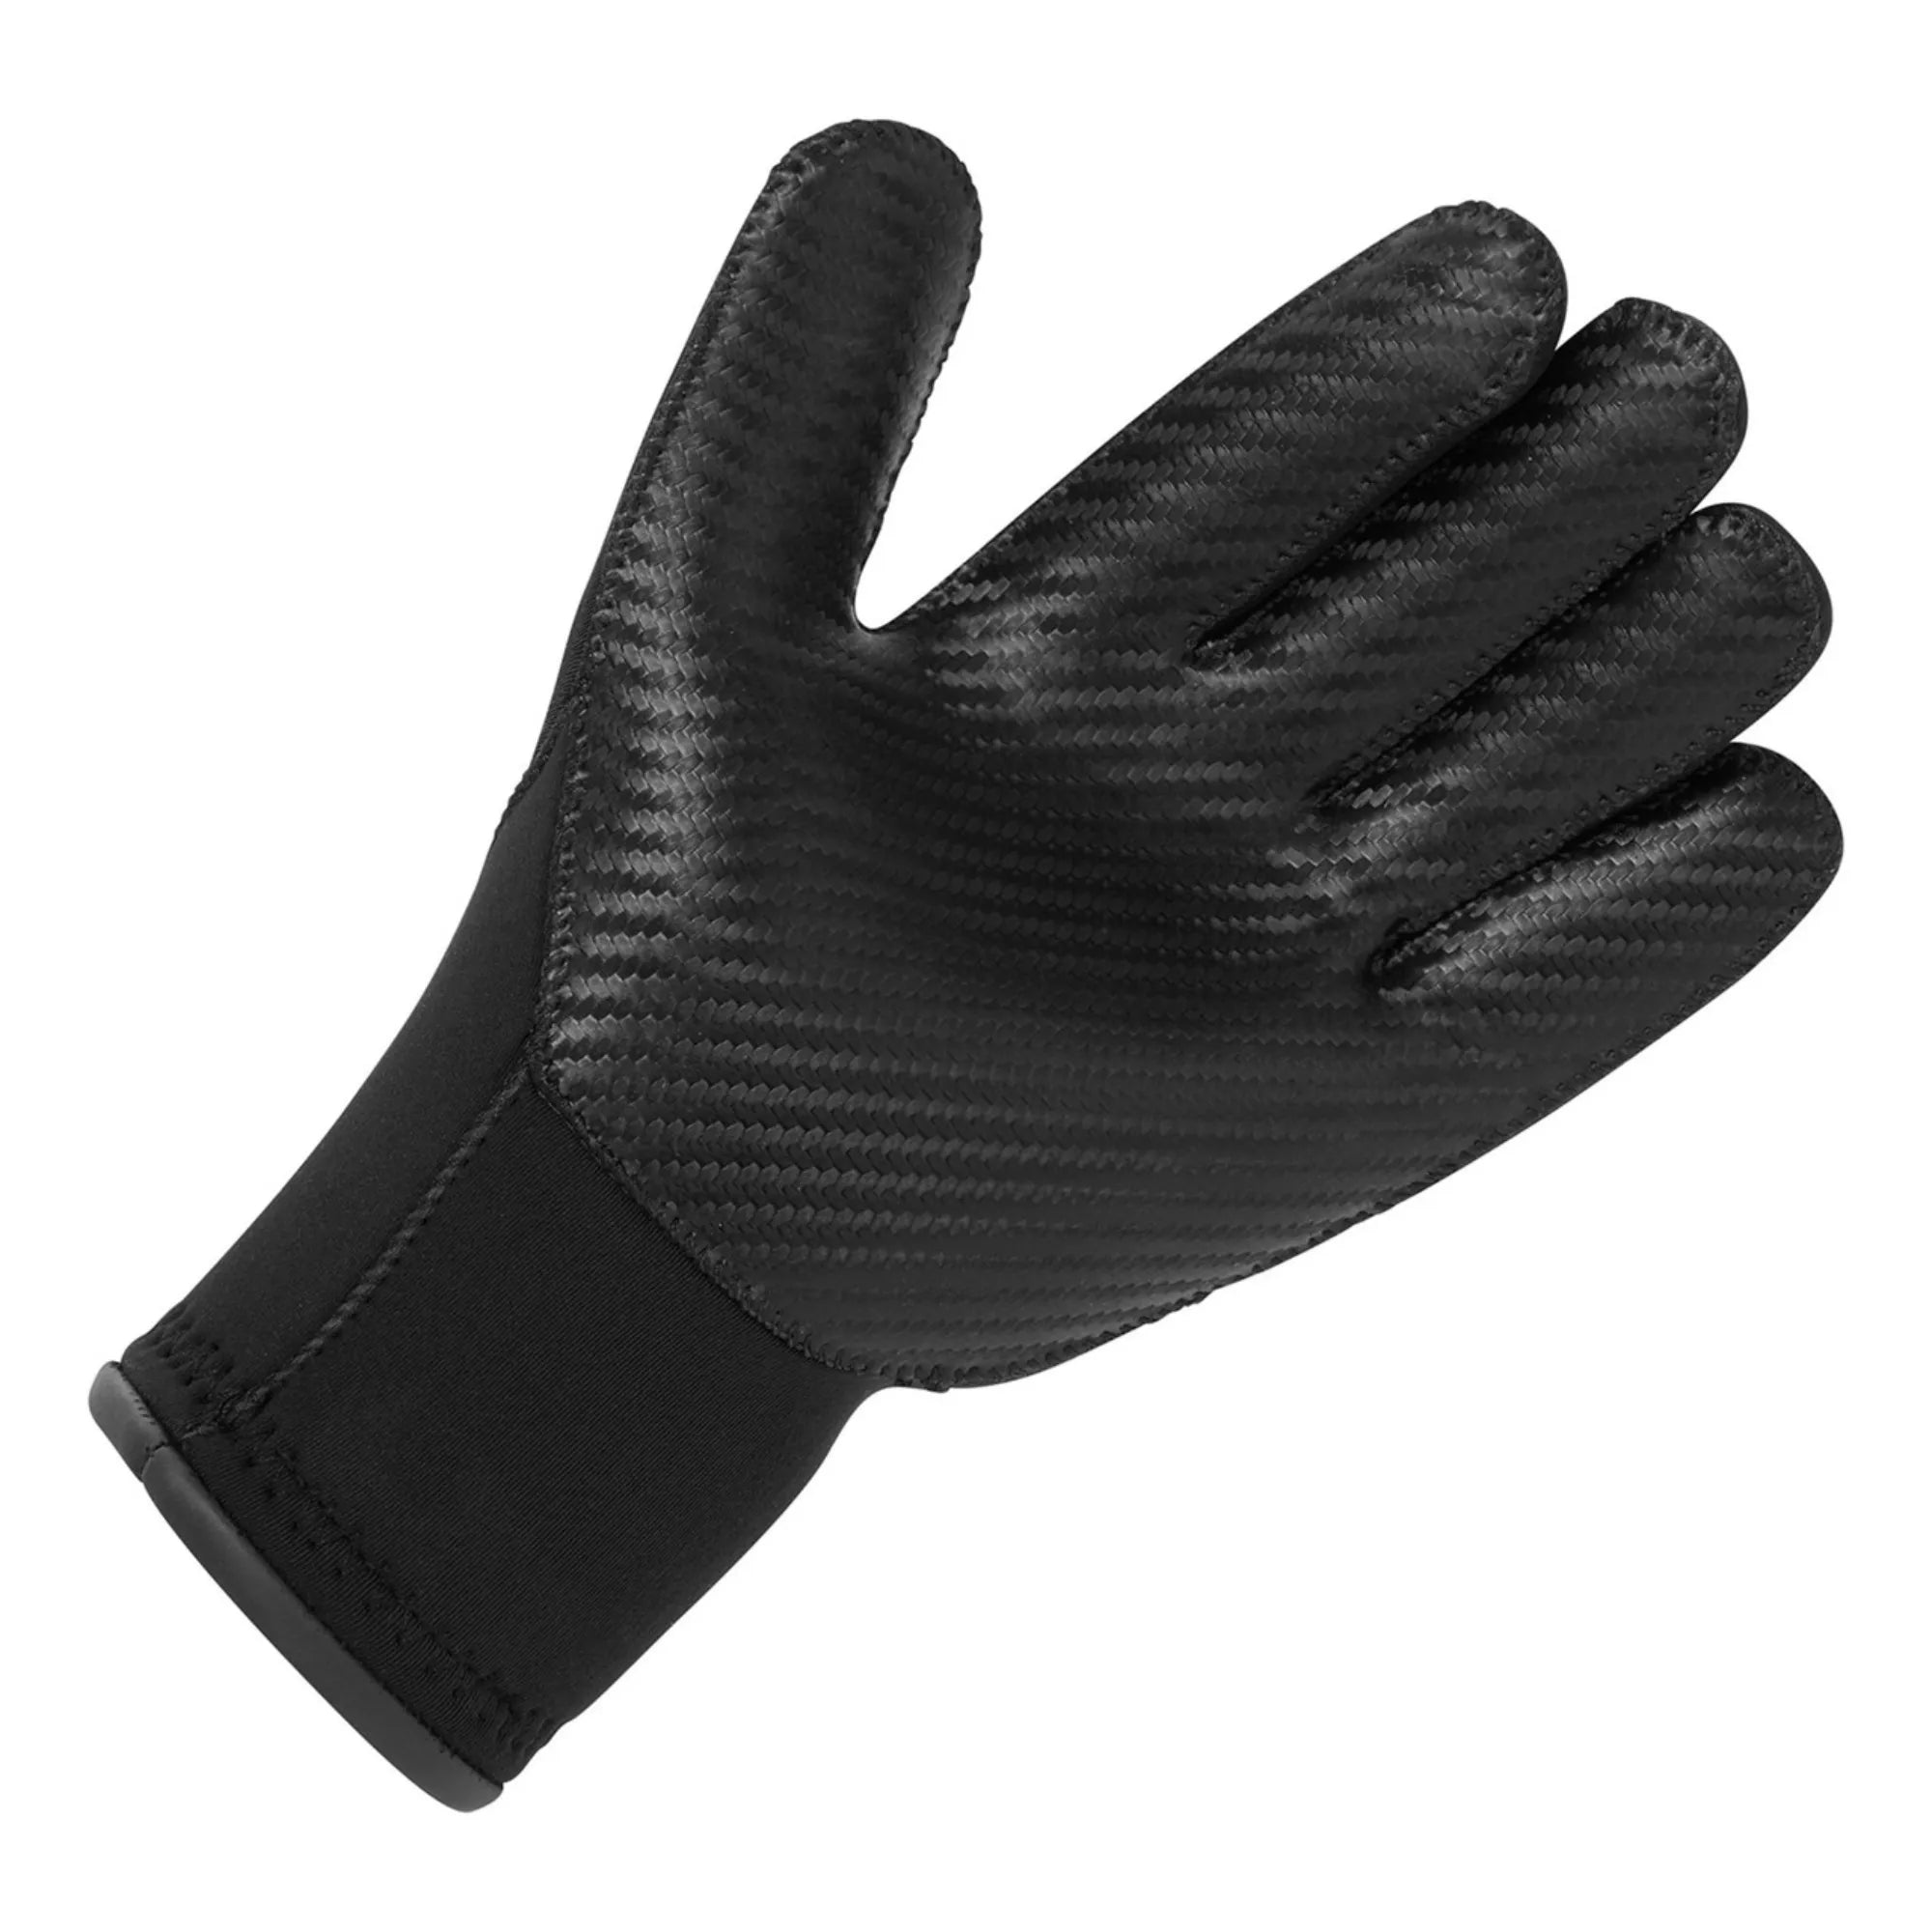 Neoprene Gloves - Black